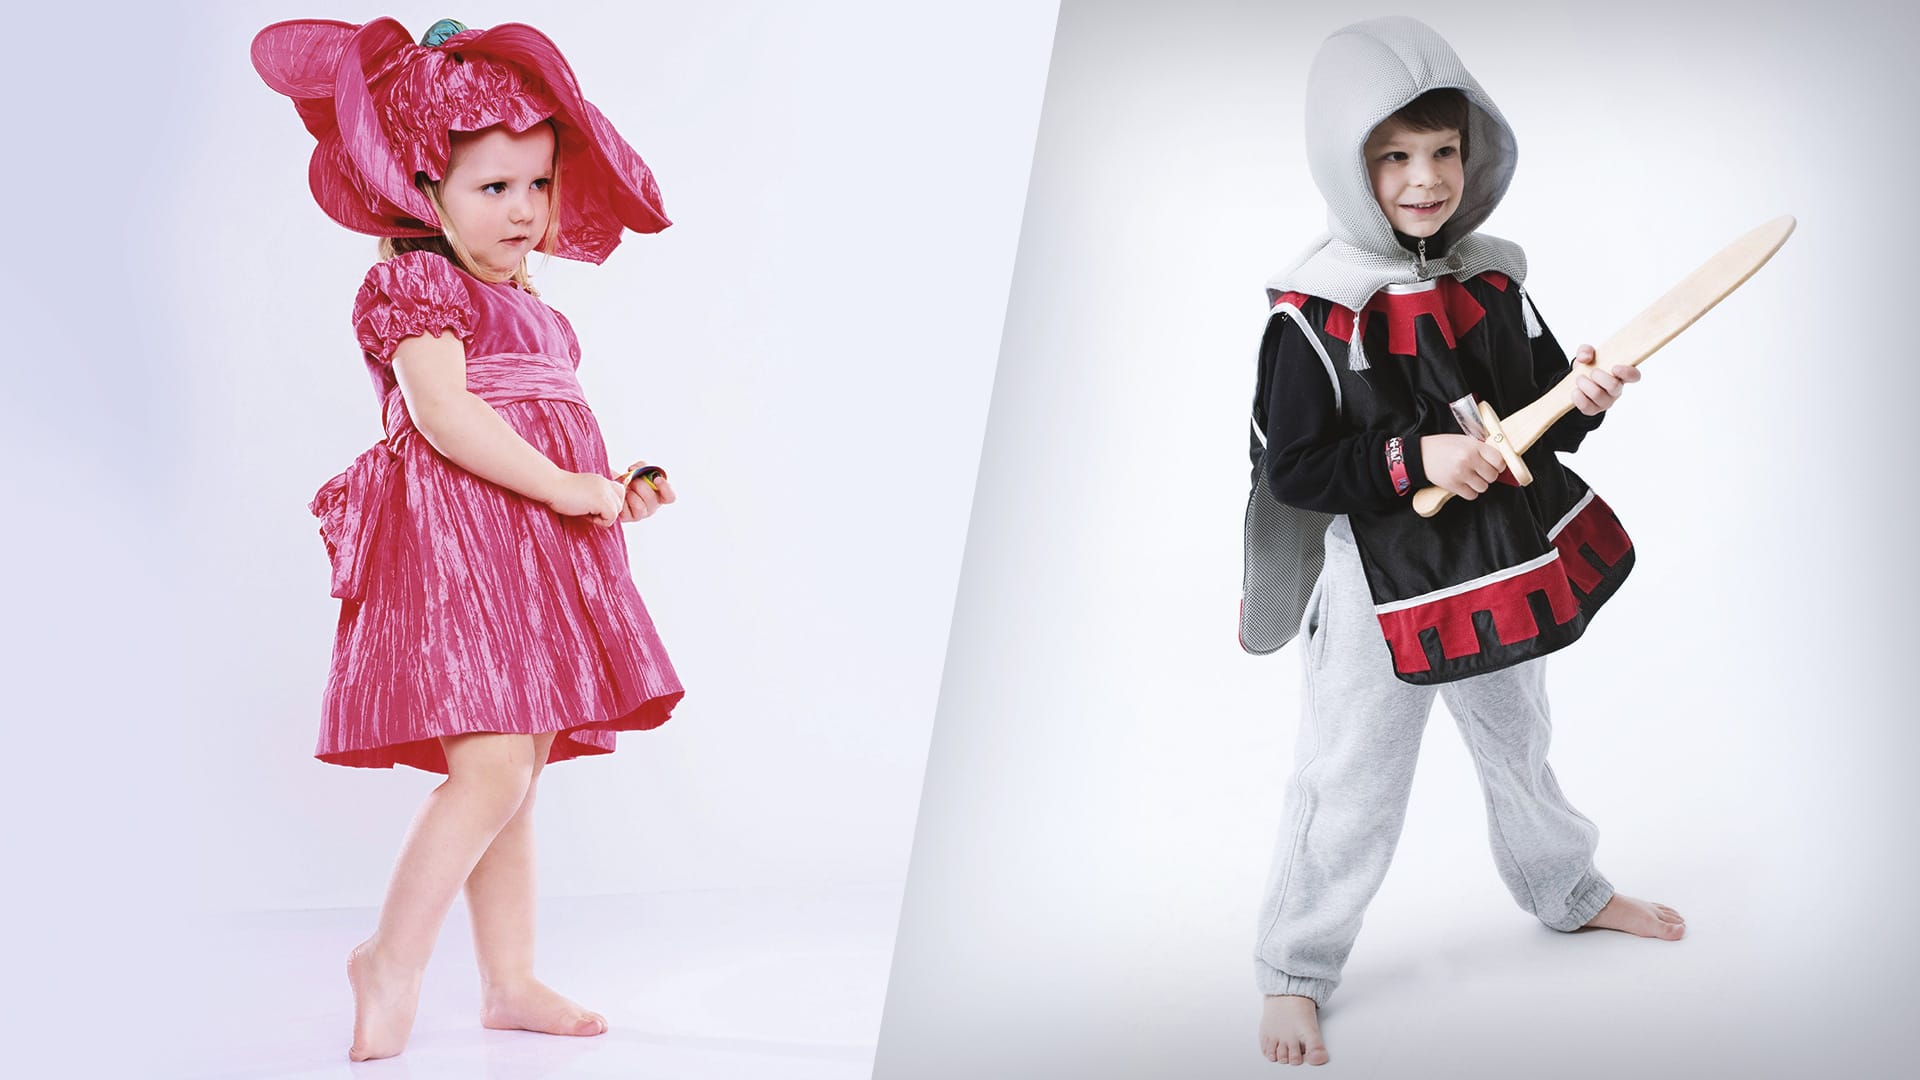 Der Unterschied: Freizügige Kostüme gibt es sogar für junge Mädchen.